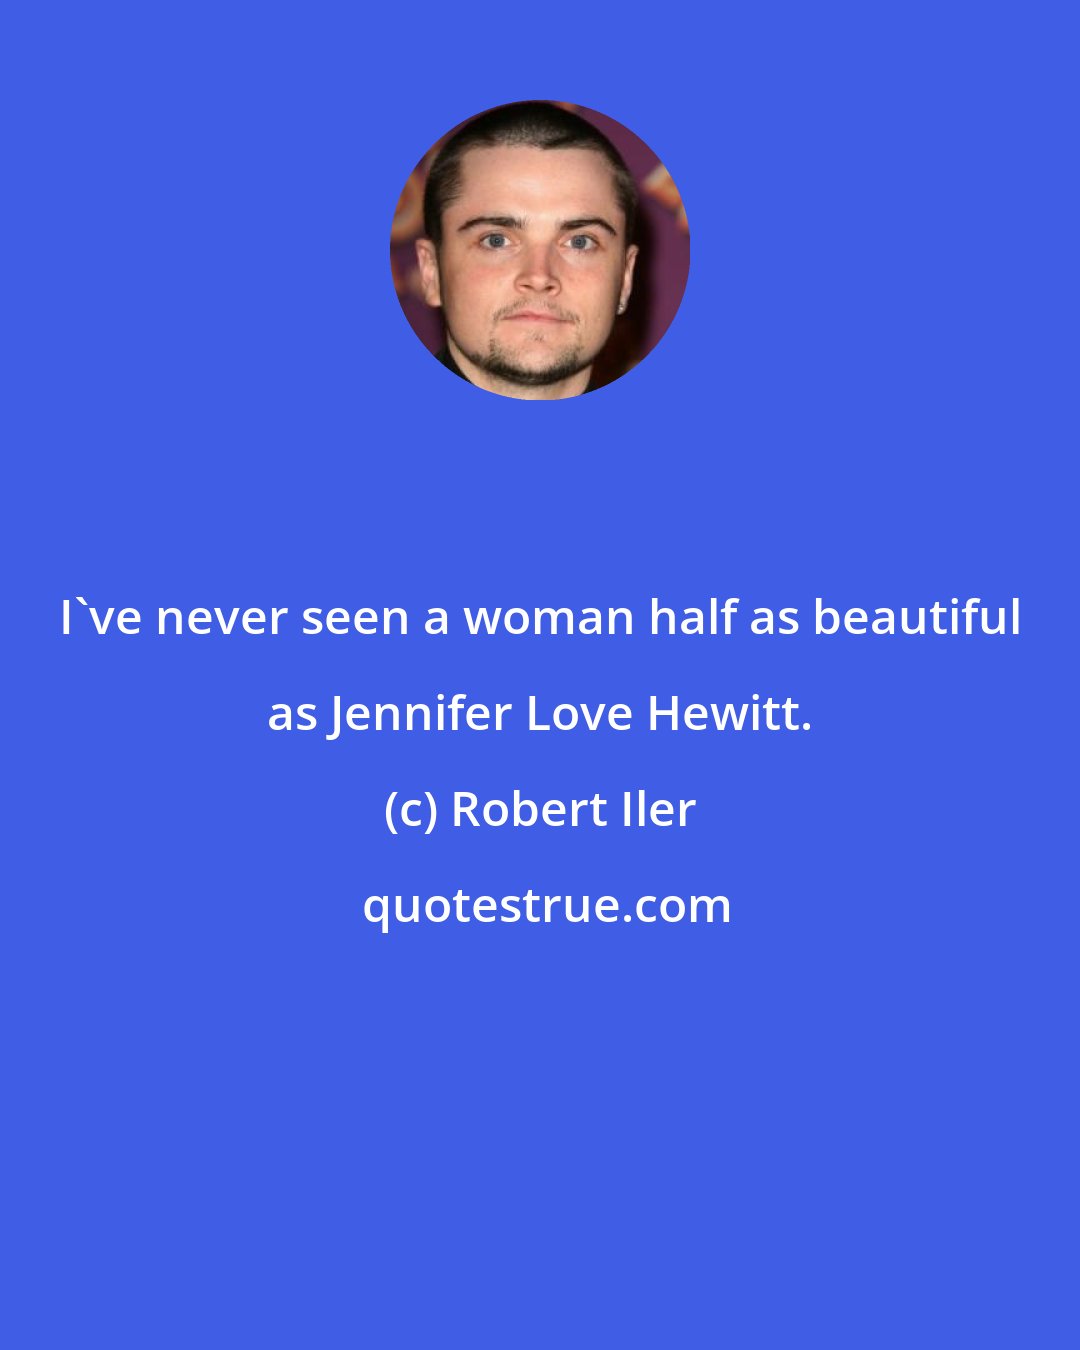 Robert Iler: I've never seen a woman half as beautiful as Jennifer Love Hewitt.